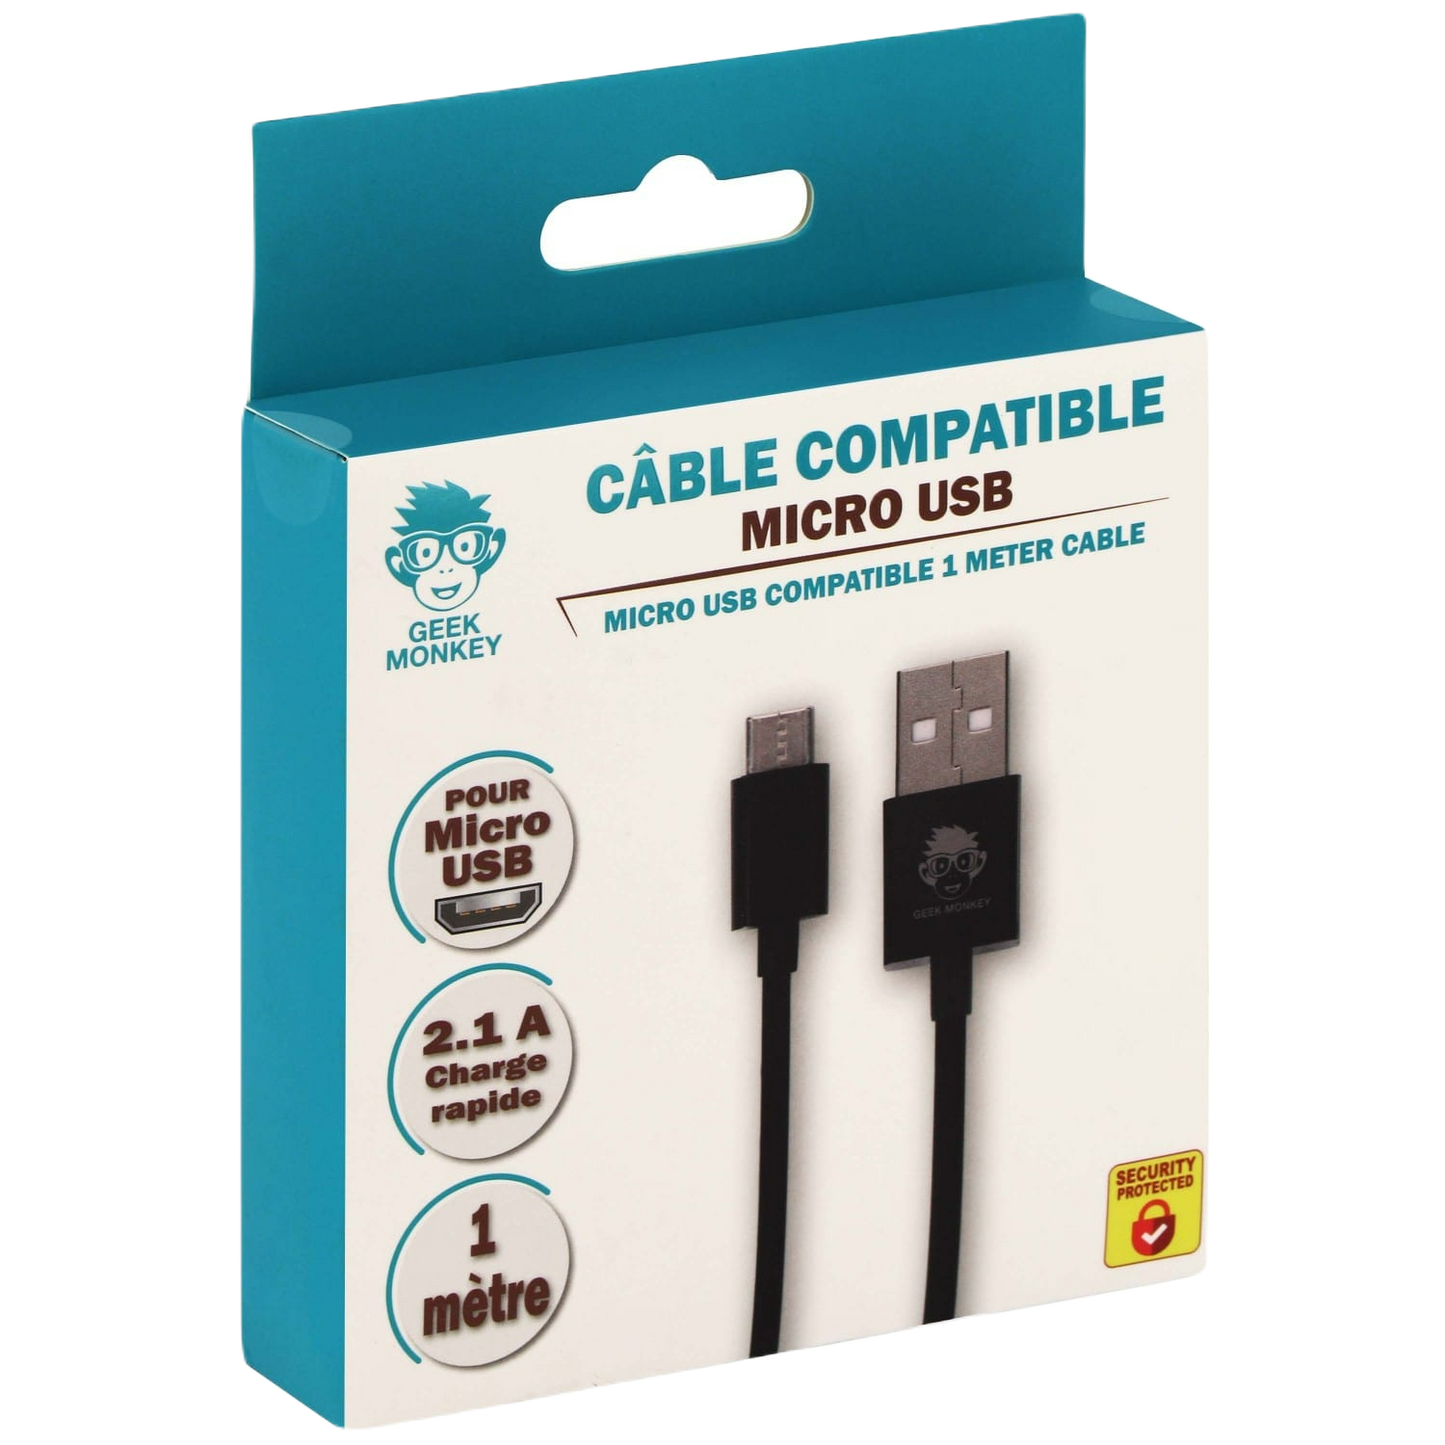 Câble compatible Micro USB GEEK MONKEY